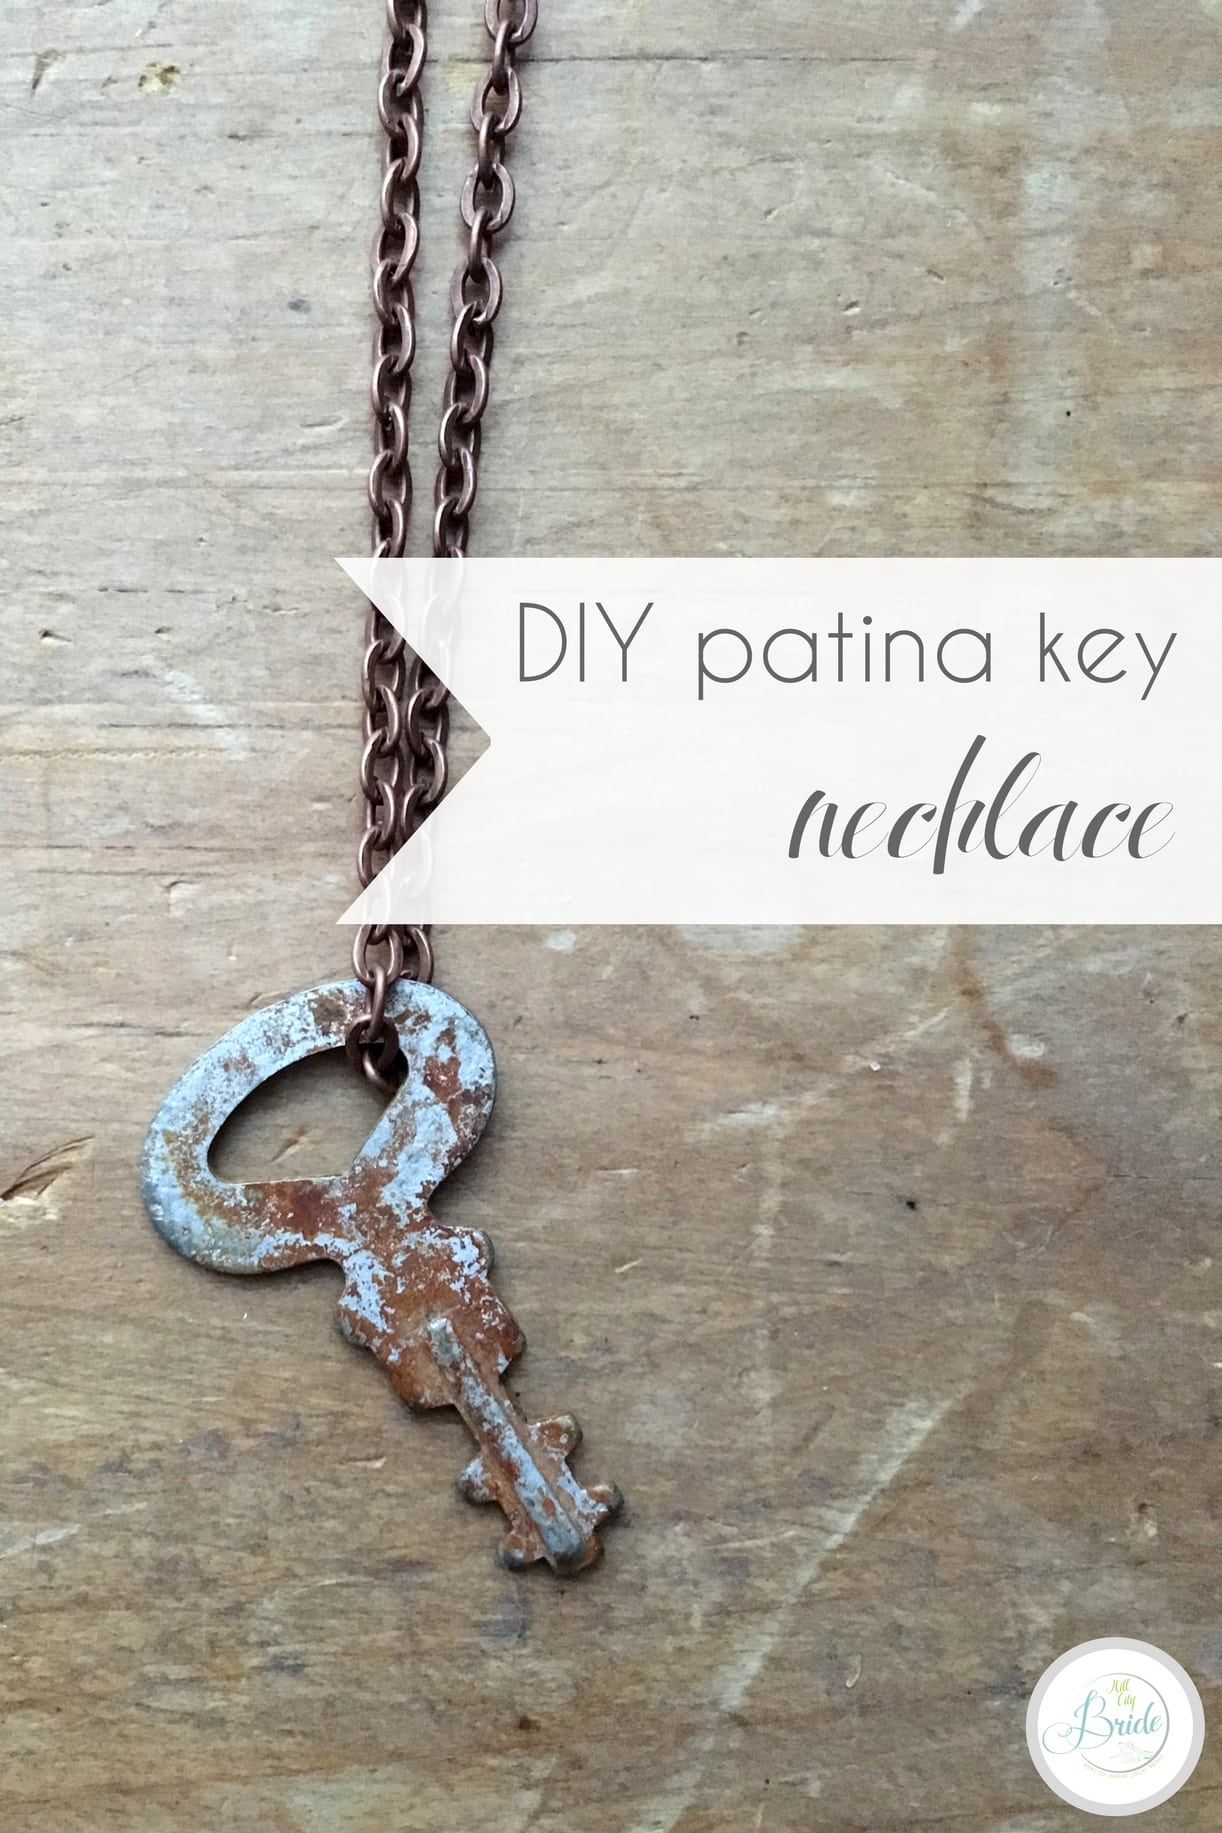 DIY Patina Key Necklace Vintage How to Age Metal | Hill City Bride Virginia Wedding Blog